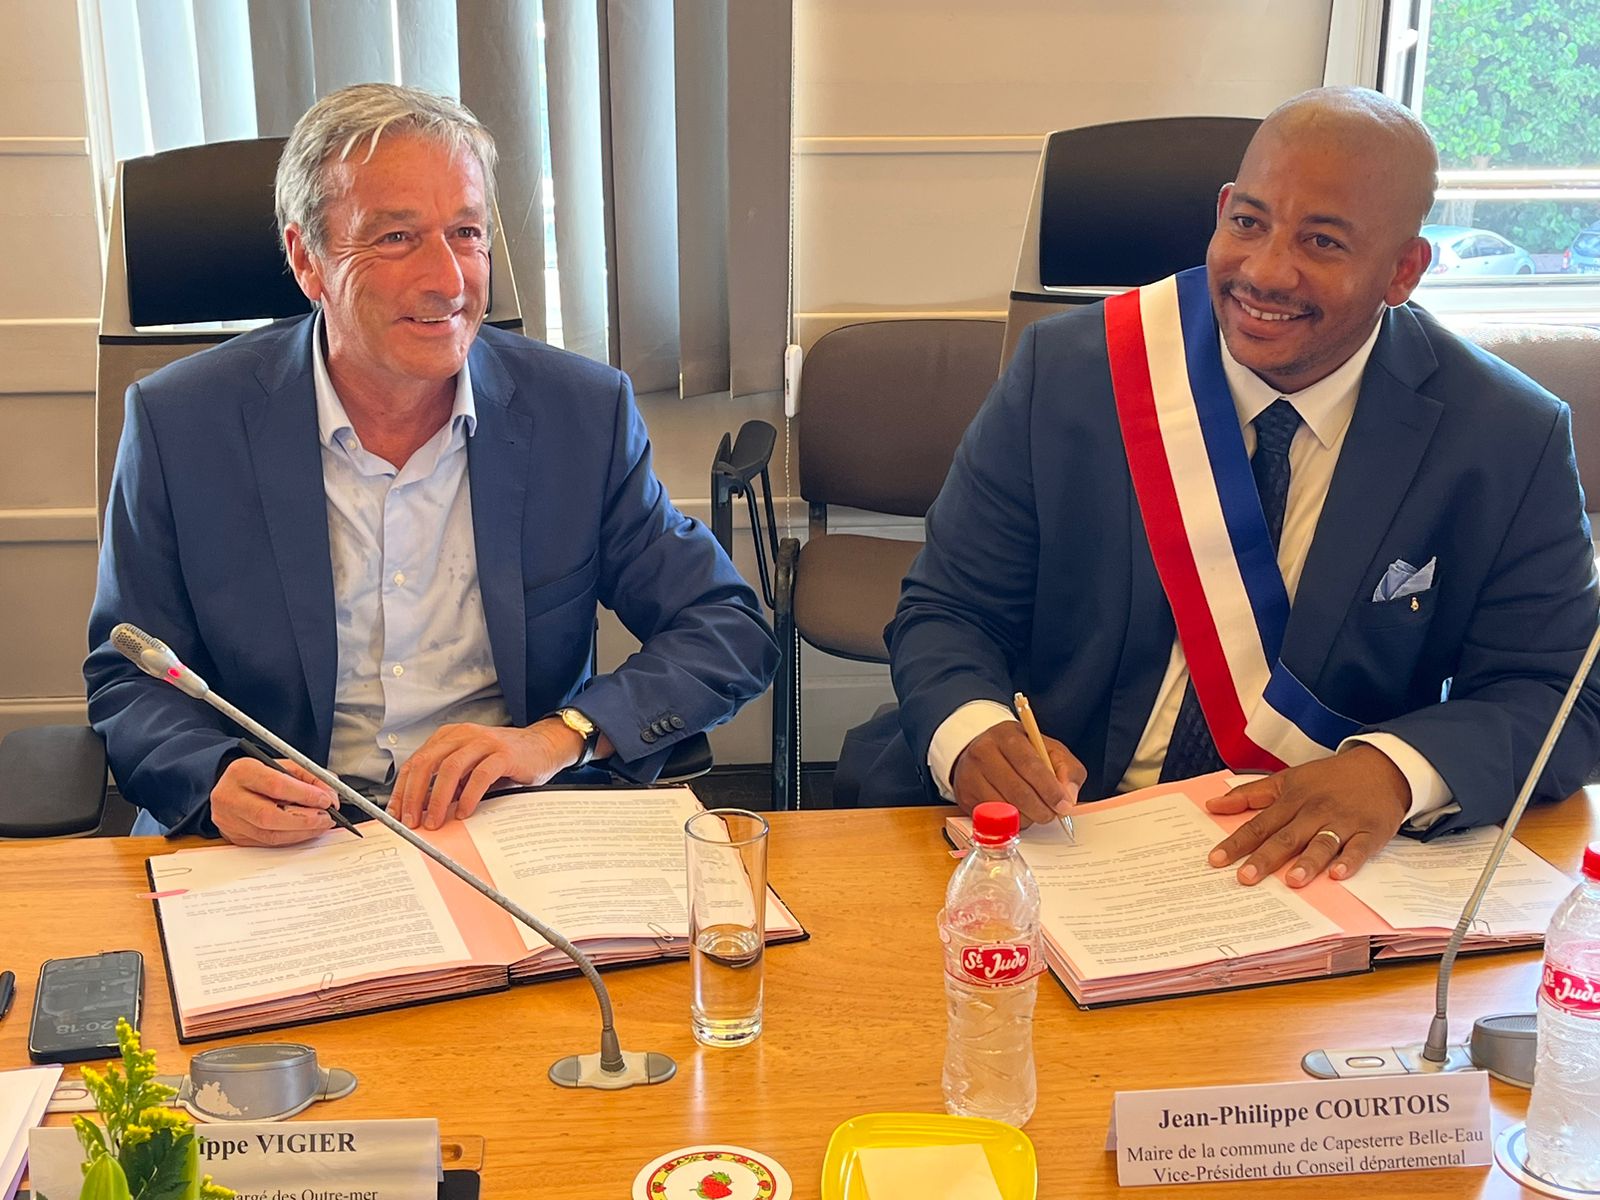     Capesterre-Belle-Eau signe le contrat de redressement outre-mer

